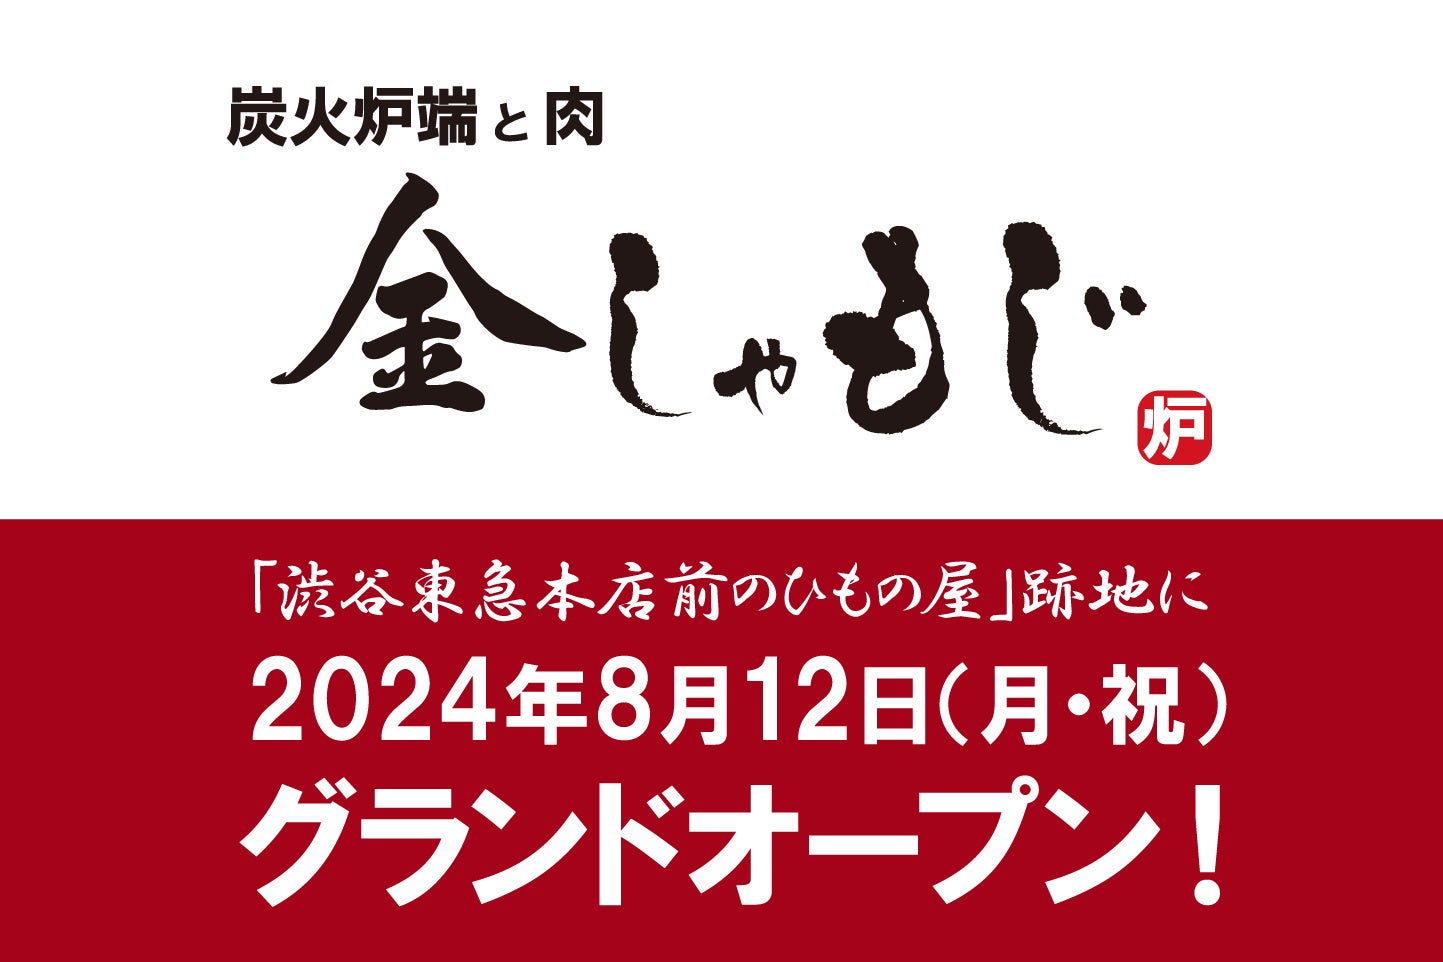 【メディア向け試食会開催】新業態「炭火炉端と肉 金しゃもじ」が８月12日（月・祝）渋谷にオープン